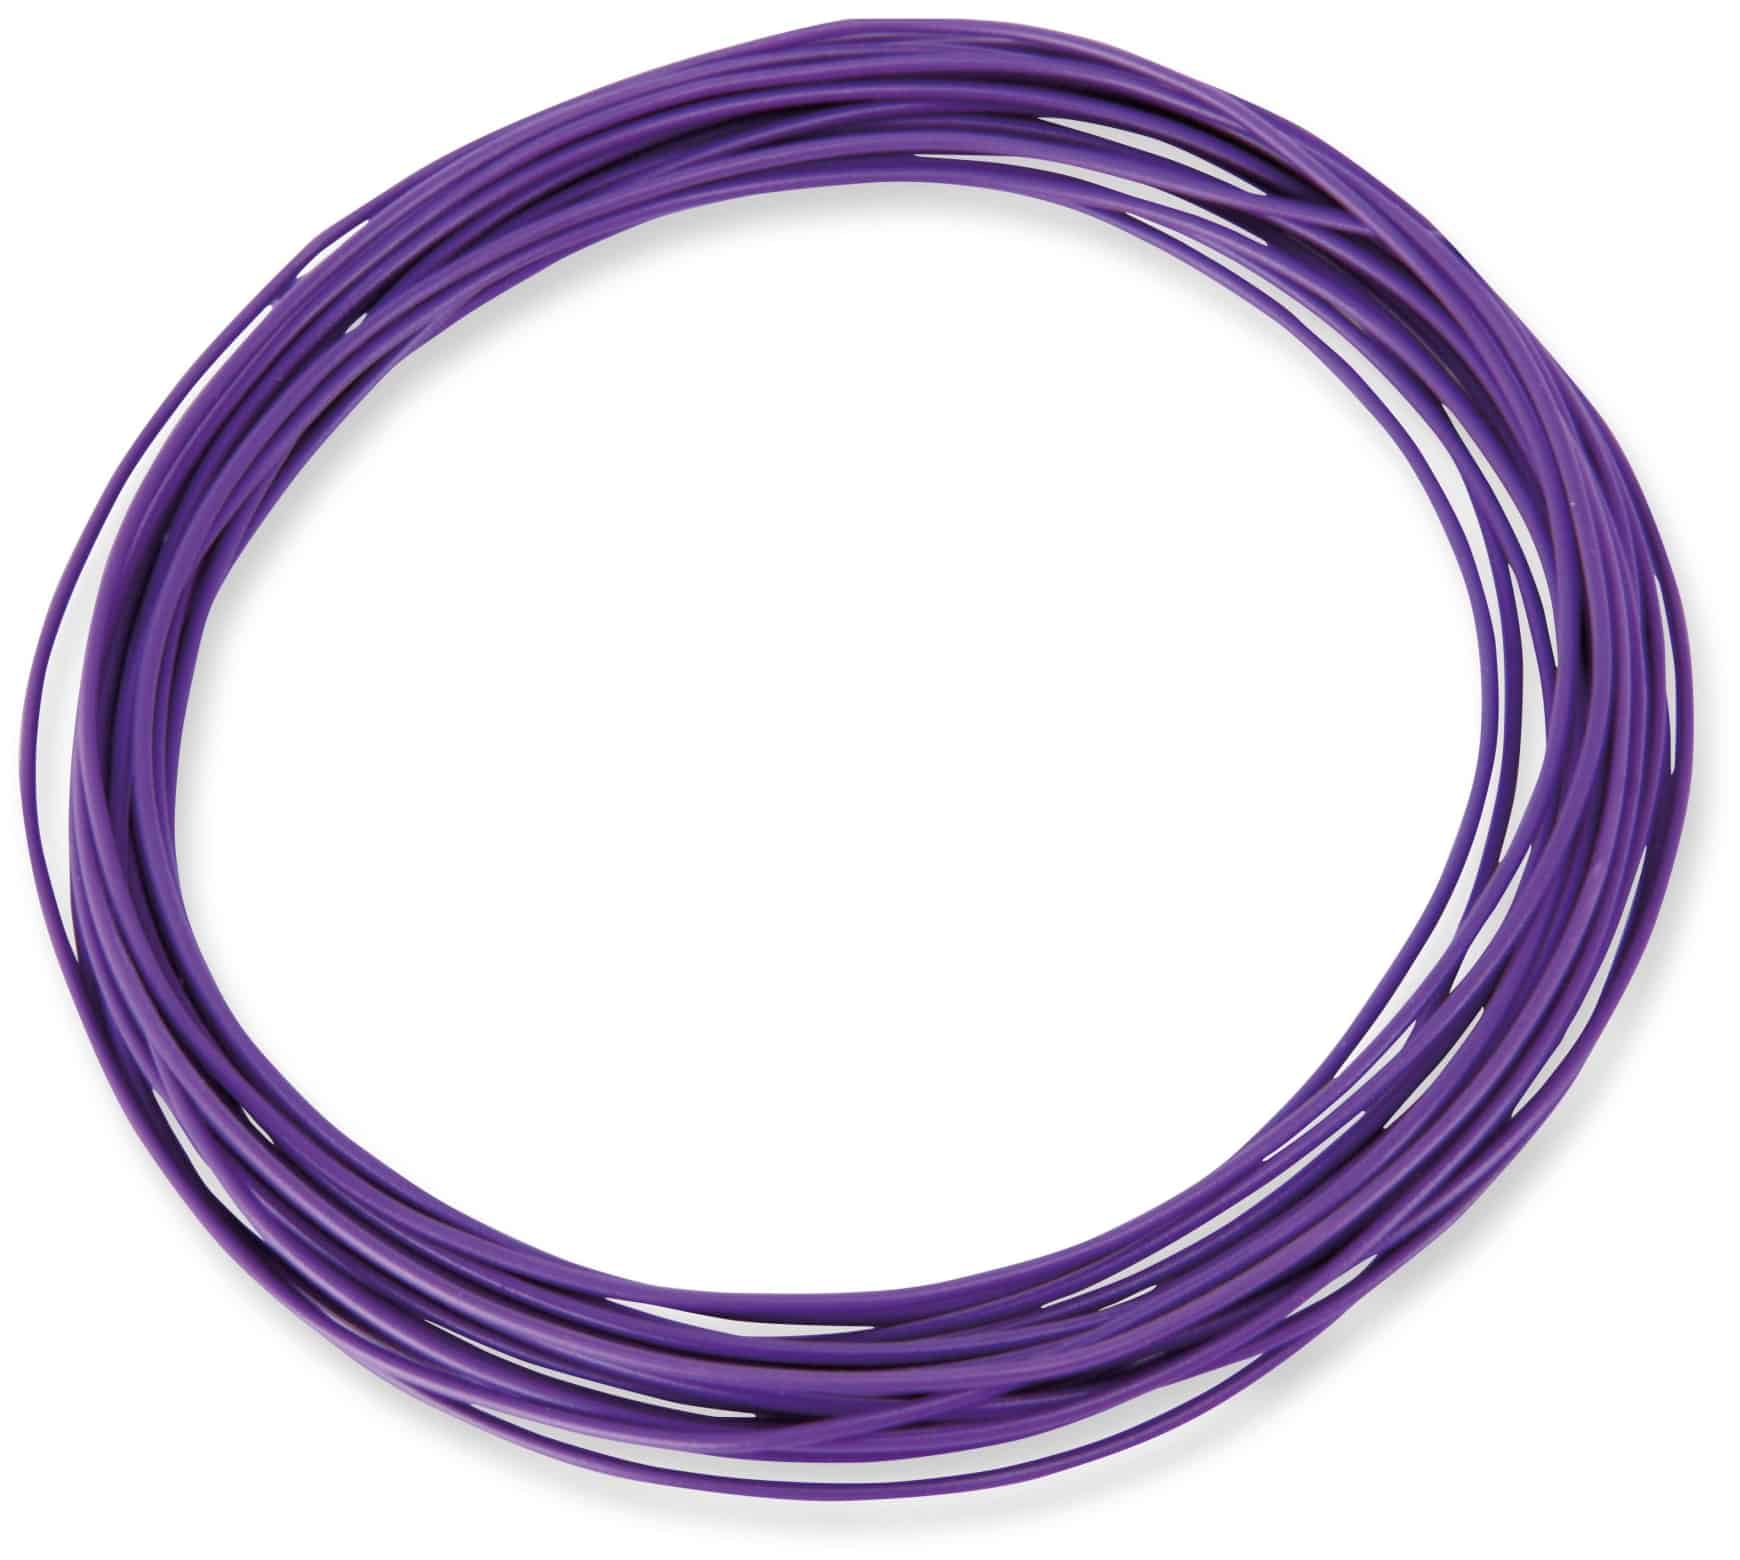 RAUTRONIC Litzen-Sortiment, 0,14 mm², 5x 5 m, weiß/braun/grau/violett/orange